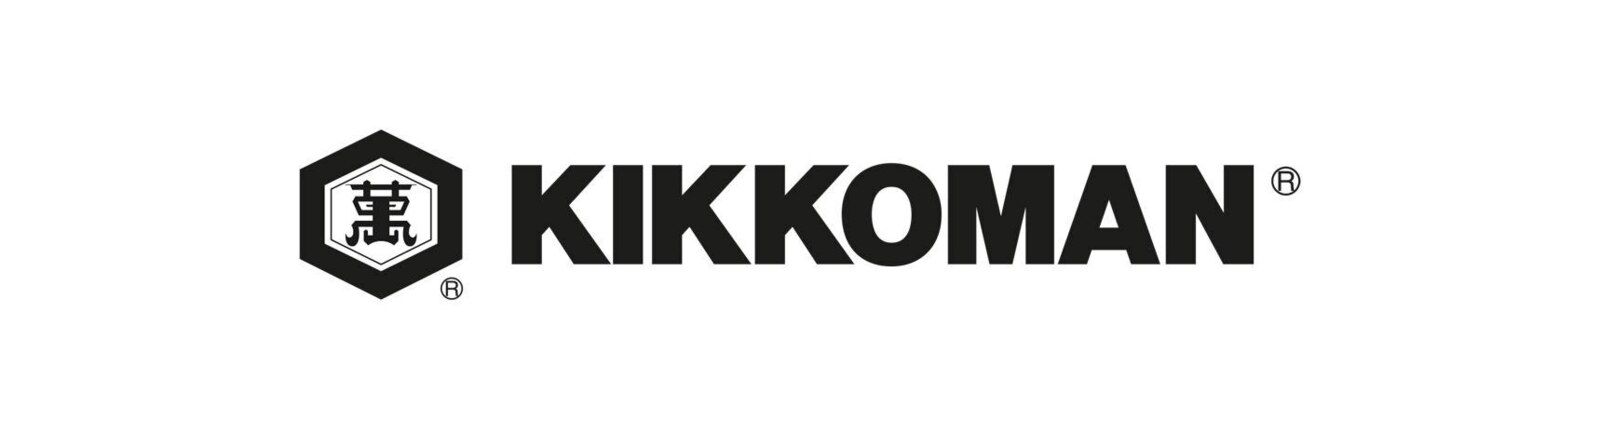 Kikkoman - Bienvenue au bal des saveurs